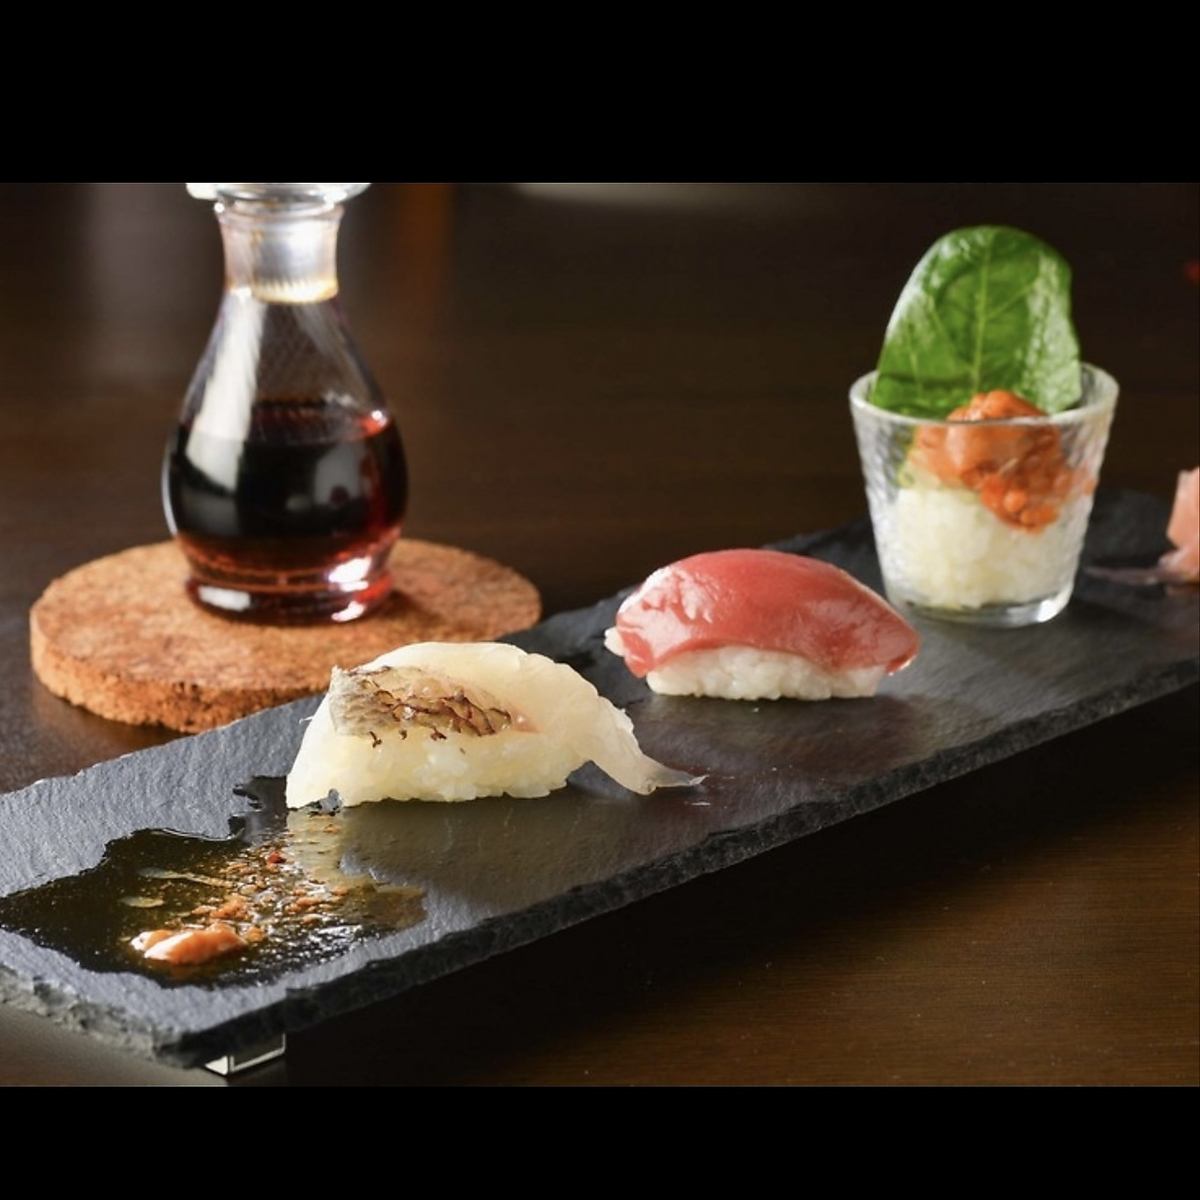 使用原汁原味的菜肴、清酒和现场食材制作的原味日本料理